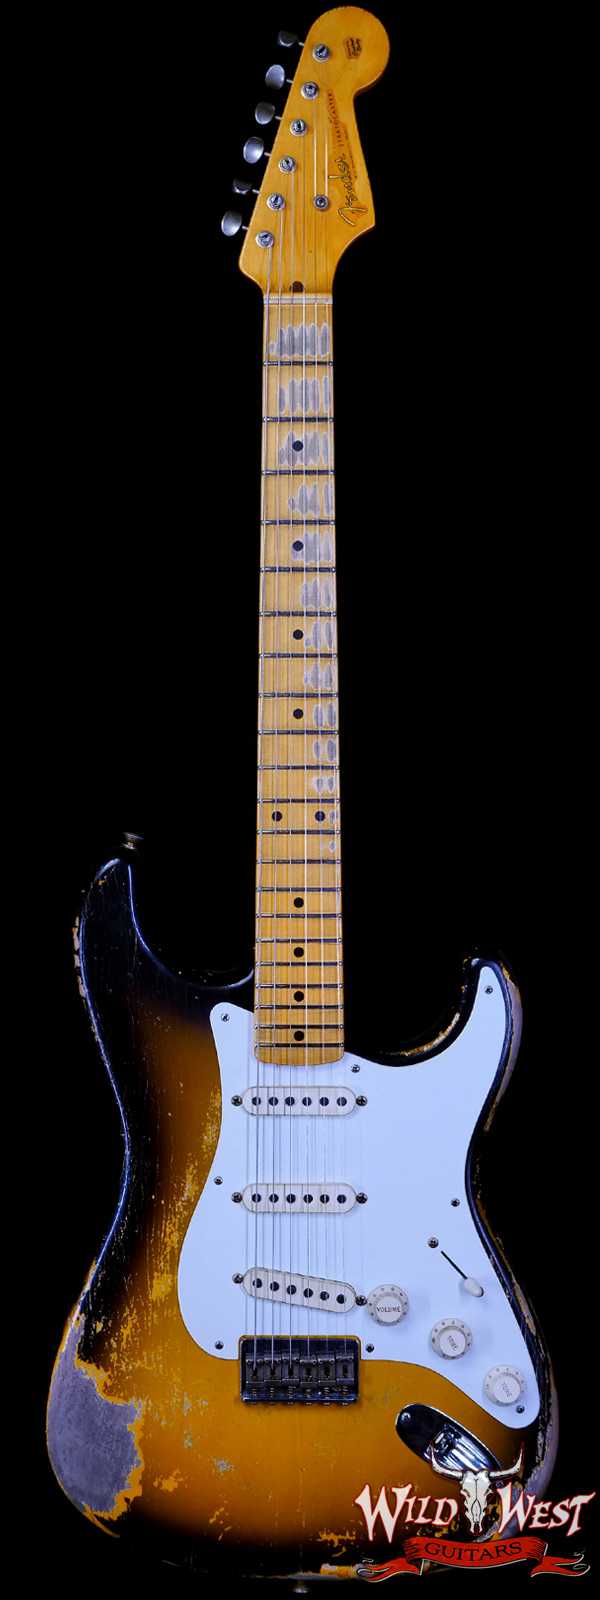 Fender Custom Shop Greg Fessler Masterbuilt 1955 Stratocaster Hardtail H/W Pickups Relic 2 Tone Sunburst 6.70 LBS